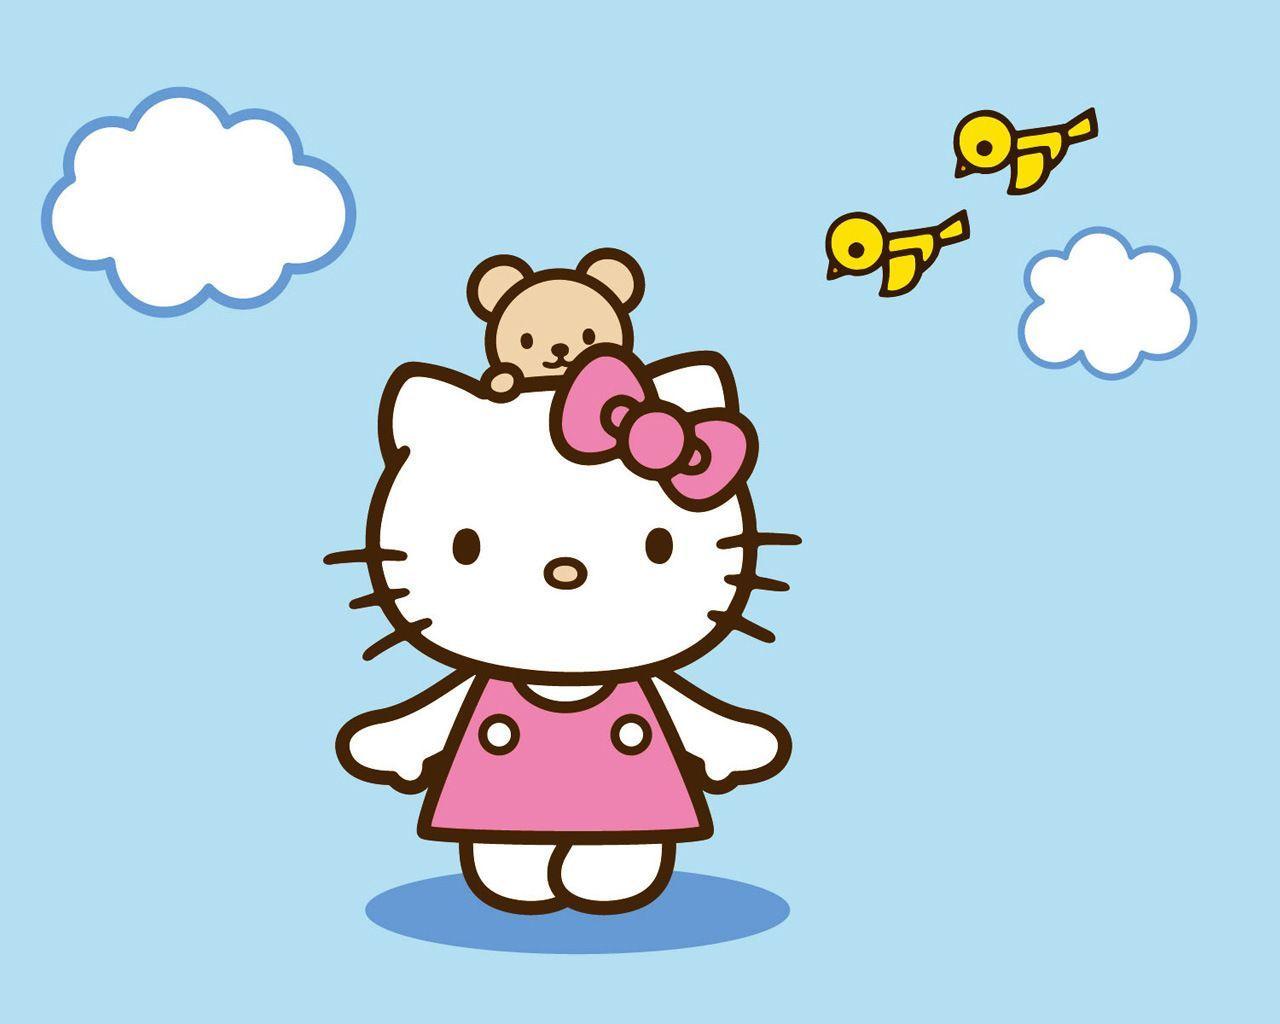 Hello Kitty là một nhân vật rất nổi tiếng và được yêu thích trên toàn thế giới. Hãy trang trí màn hình của bạn với những hình ảnh xinh xắn với Hello Kitty và mang lại cho mình cảm giác hạnh phúc và vui tươi.